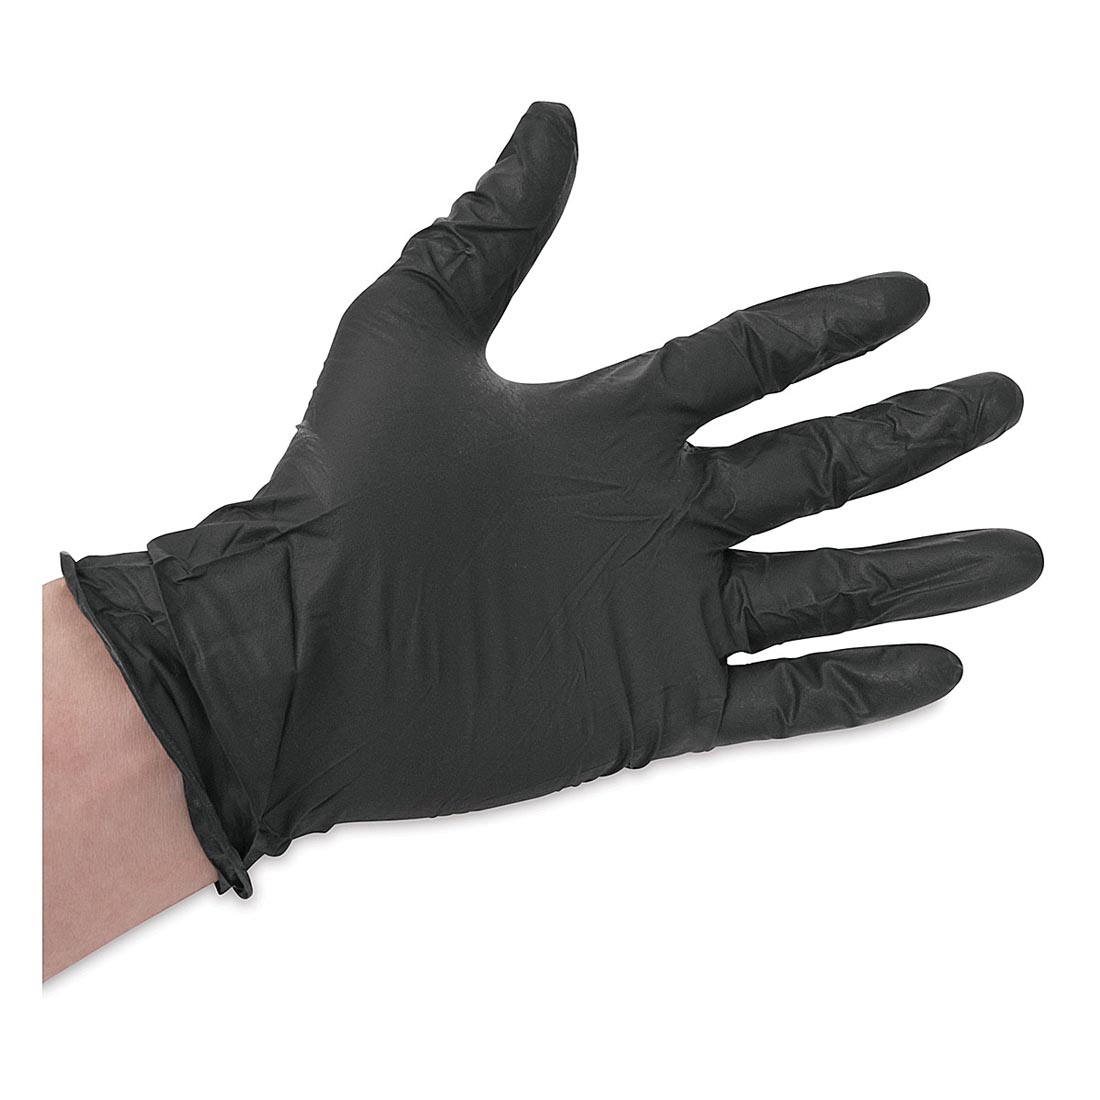 Hand wearing a Black Vinyl Glove